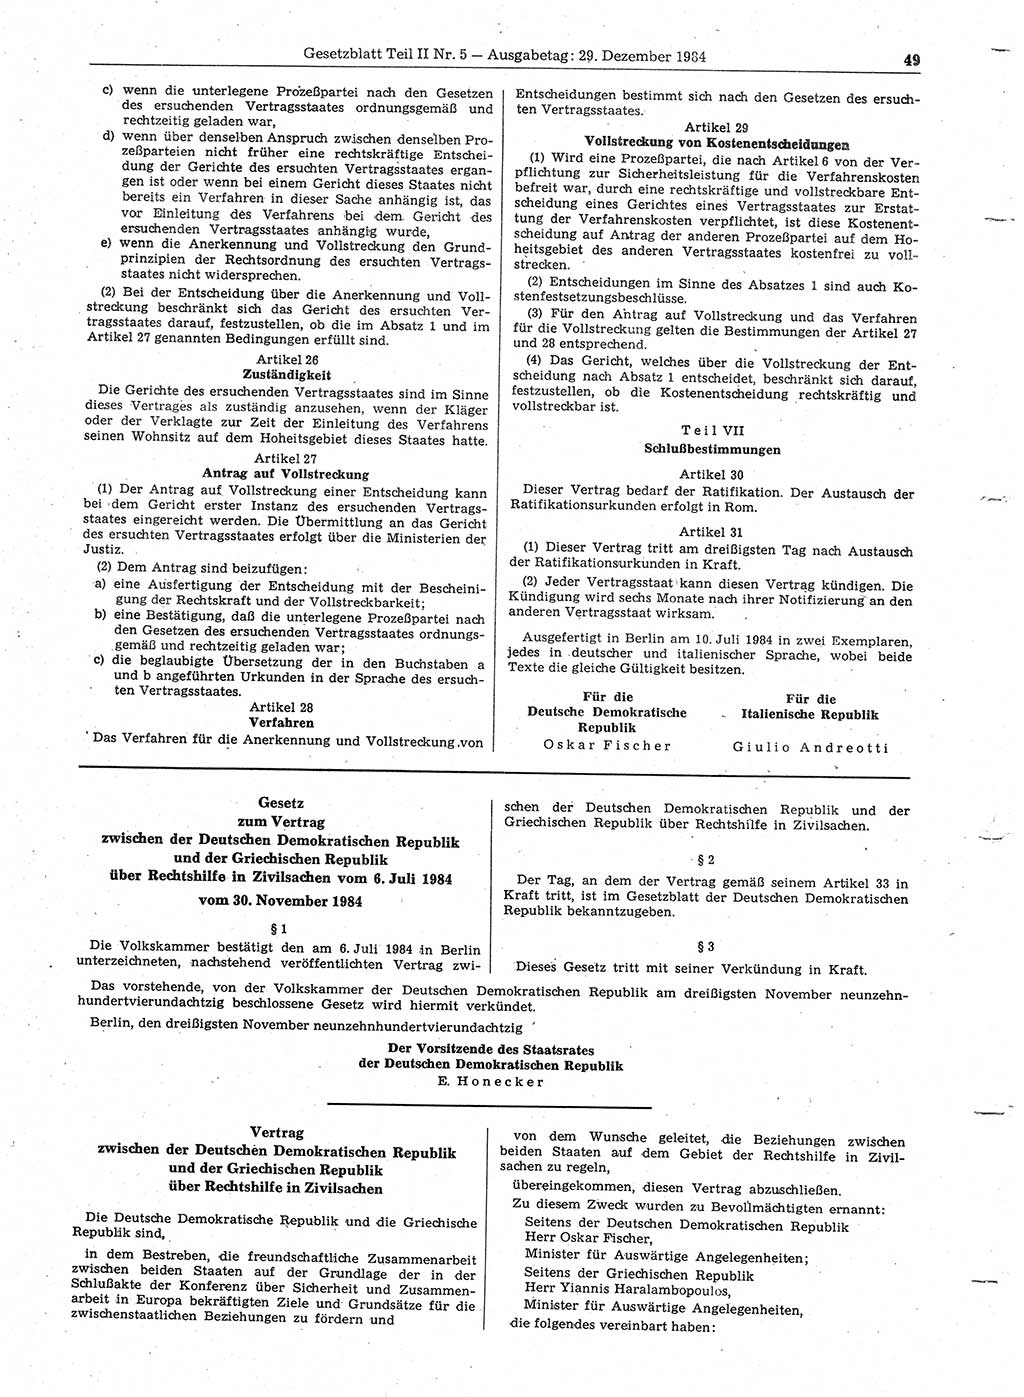 Gesetzblatt (GBl.) der Deutschen Demokratischen Republik (DDR) Teil ⅠⅠ 1984, Seite 49 (GBl. DDR ⅠⅠ 1984, S. 49)